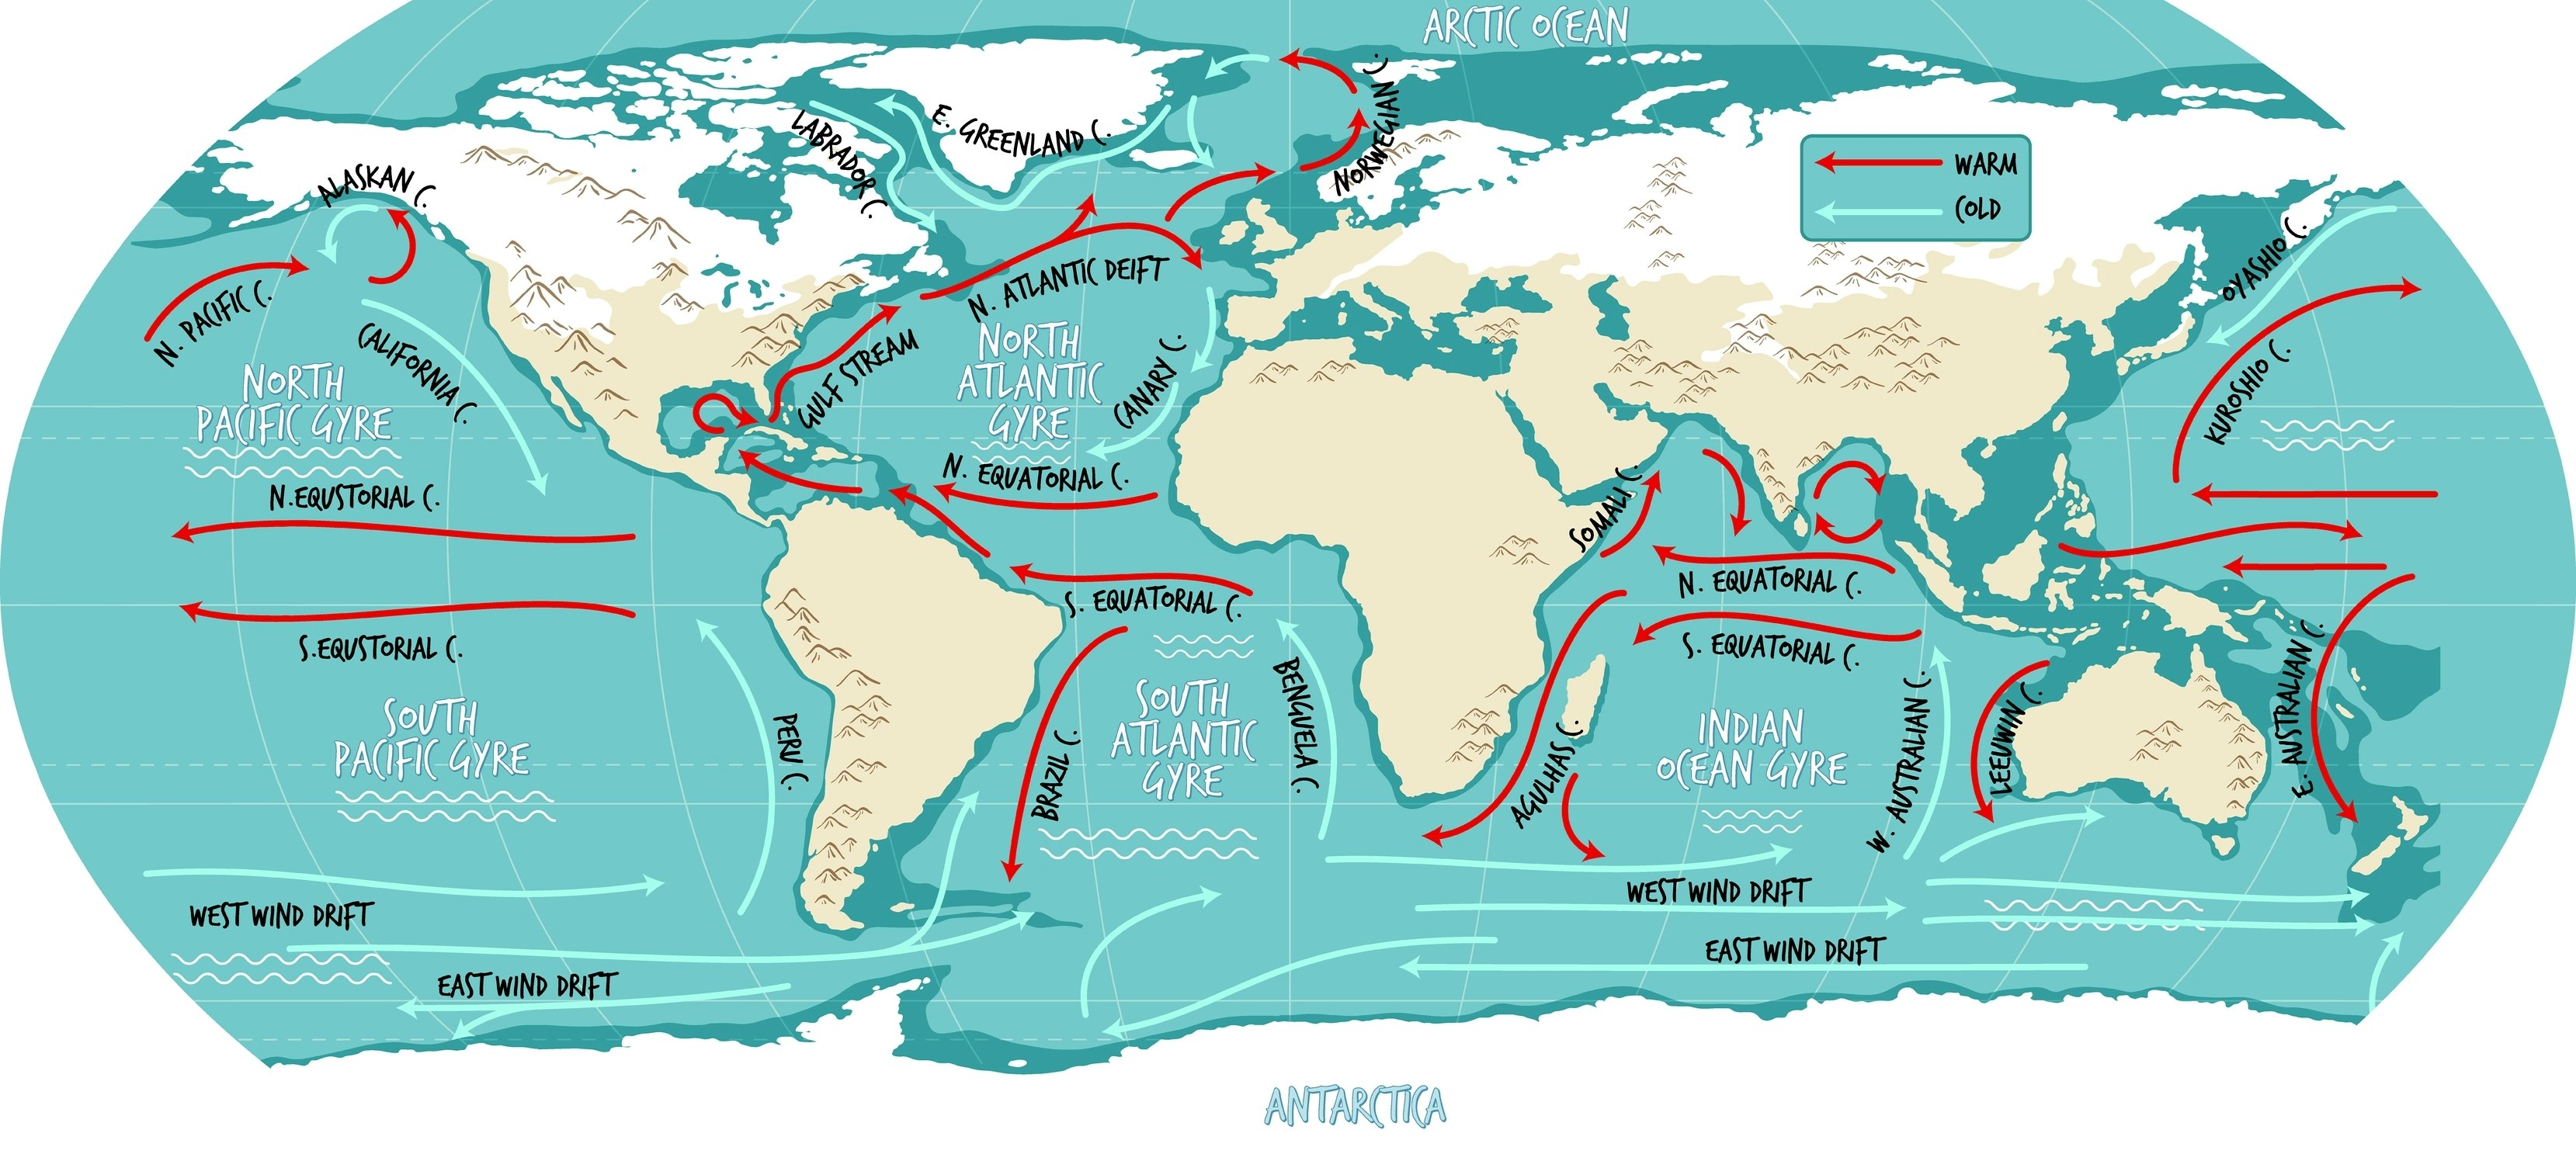 Mapa mundial ilustrativo de las corrientes oceánicas con nombres.